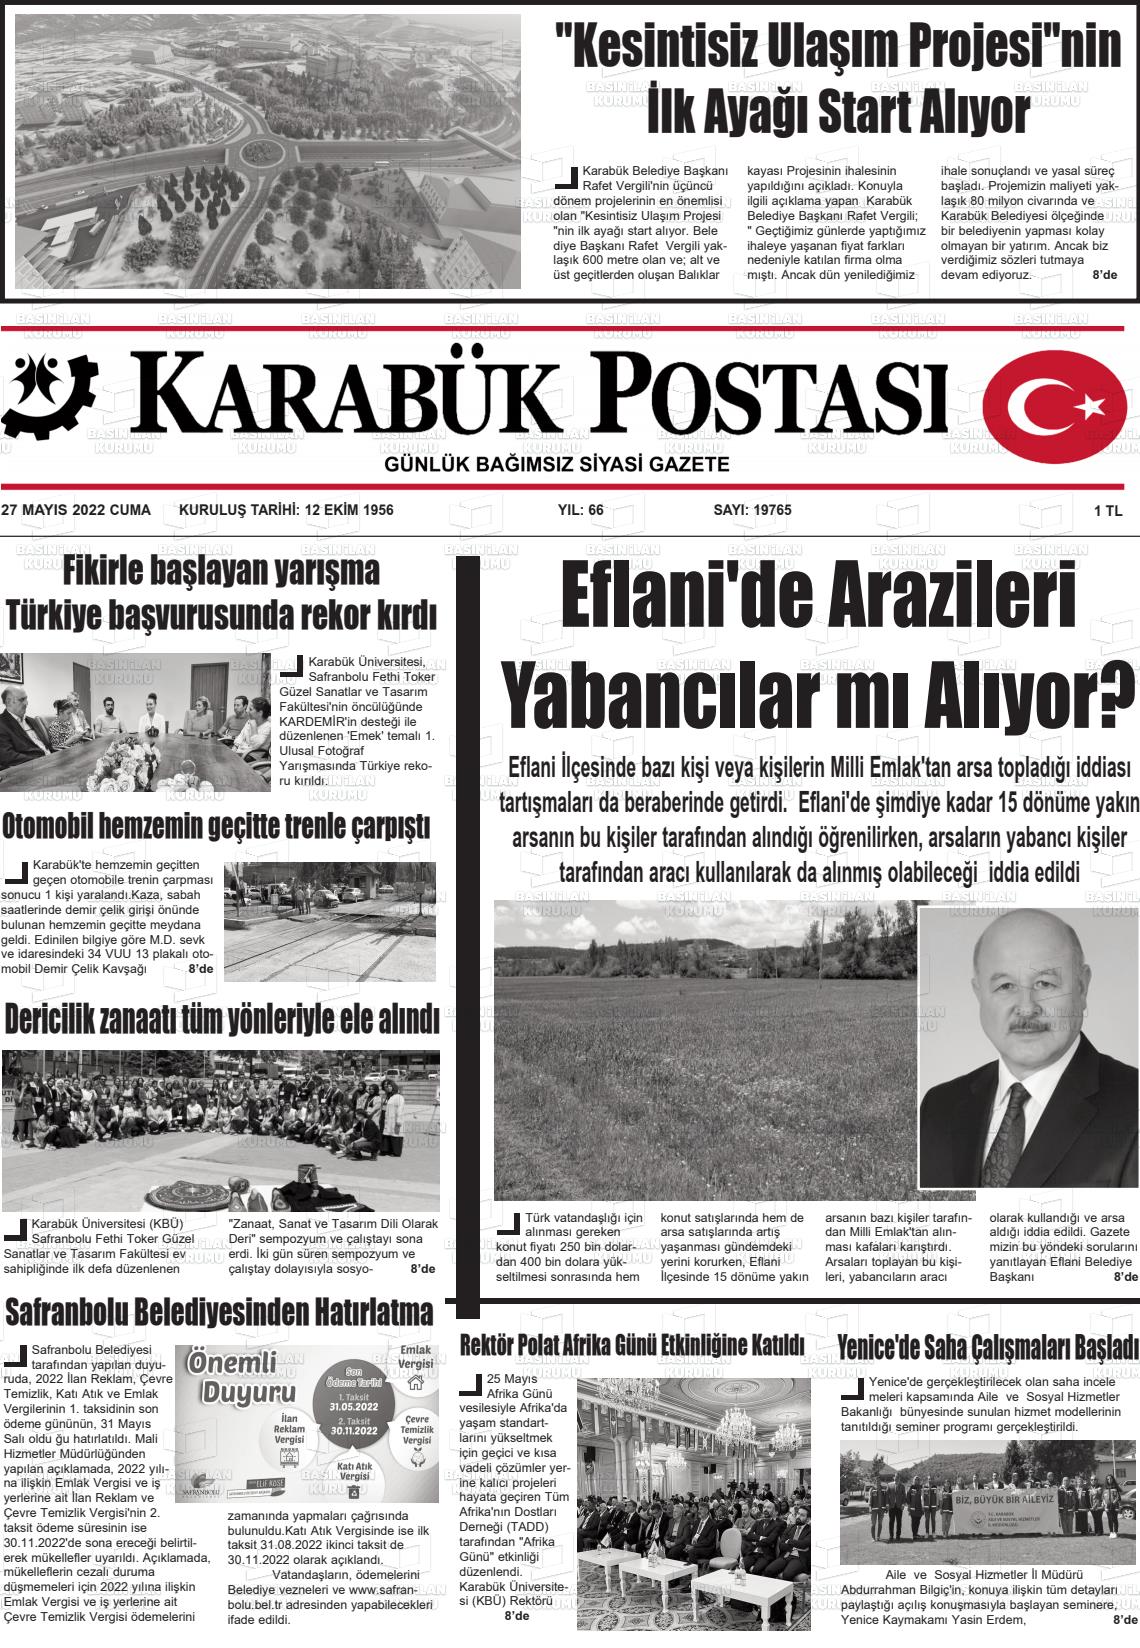 27 Mayıs 2022 Karabük Postası Gazete Manşeti